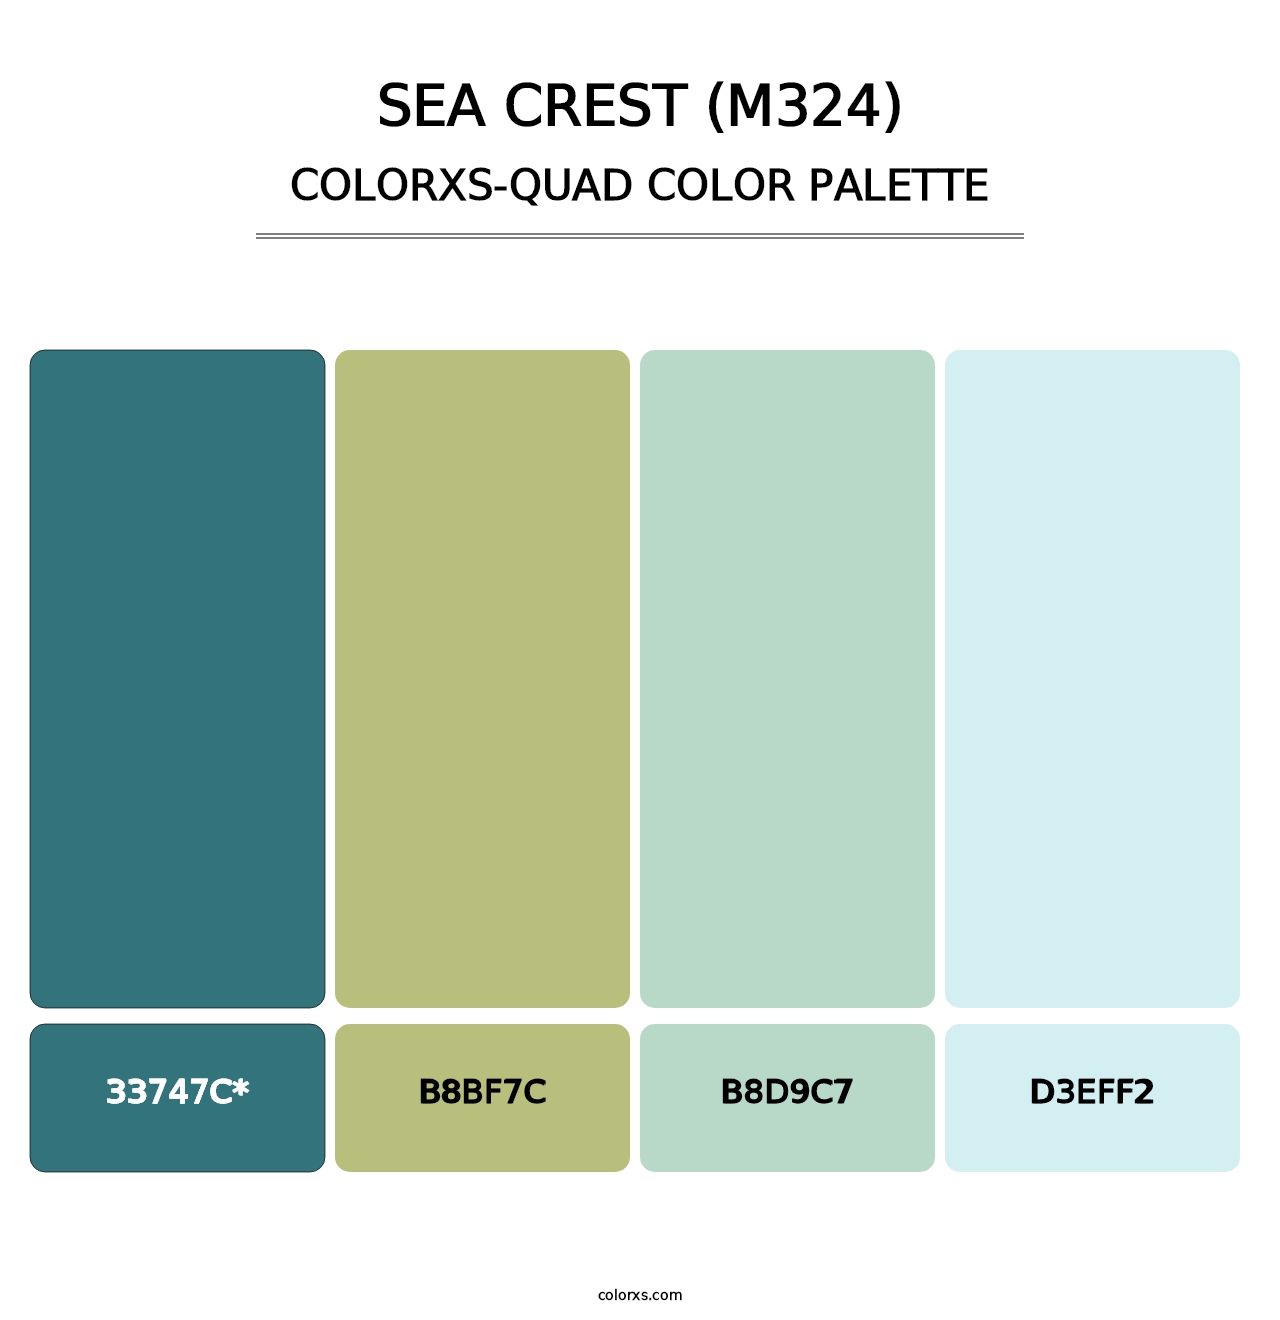 Sea Crest (M324) - Colorxs Quad Palette